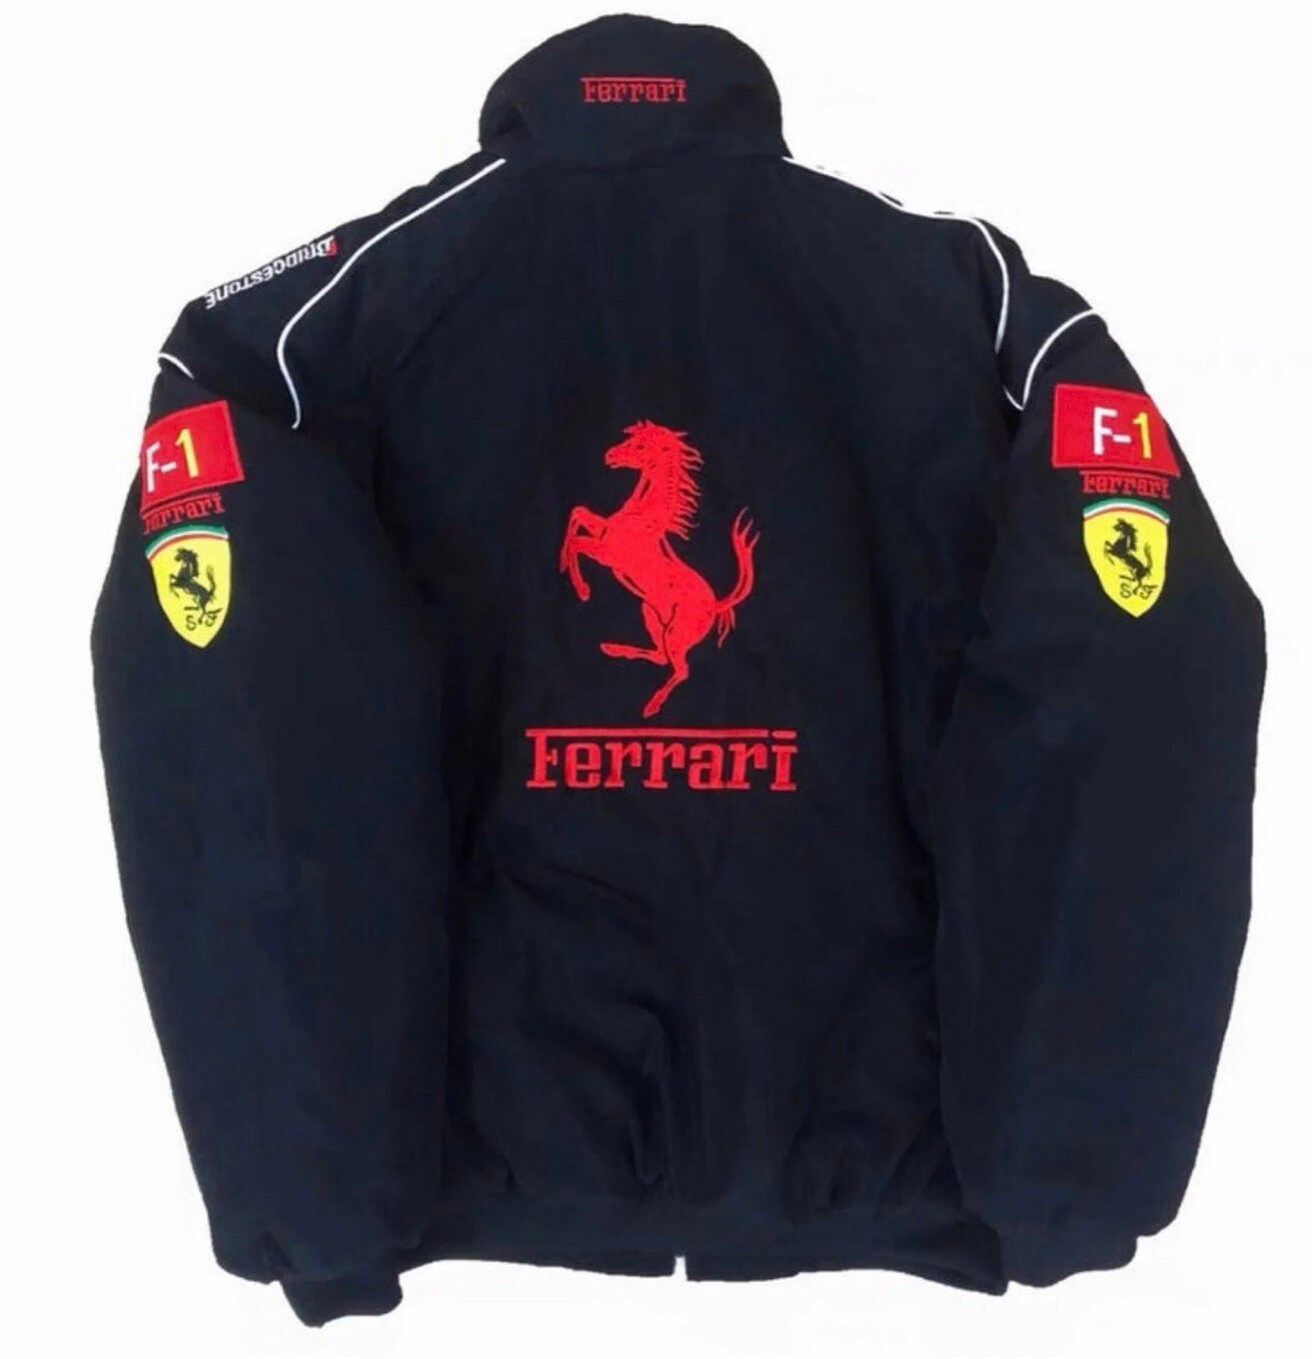 Formula 1 Racing Jacket NASCAR Ferrari Vintage Style 90s - Etsy UK